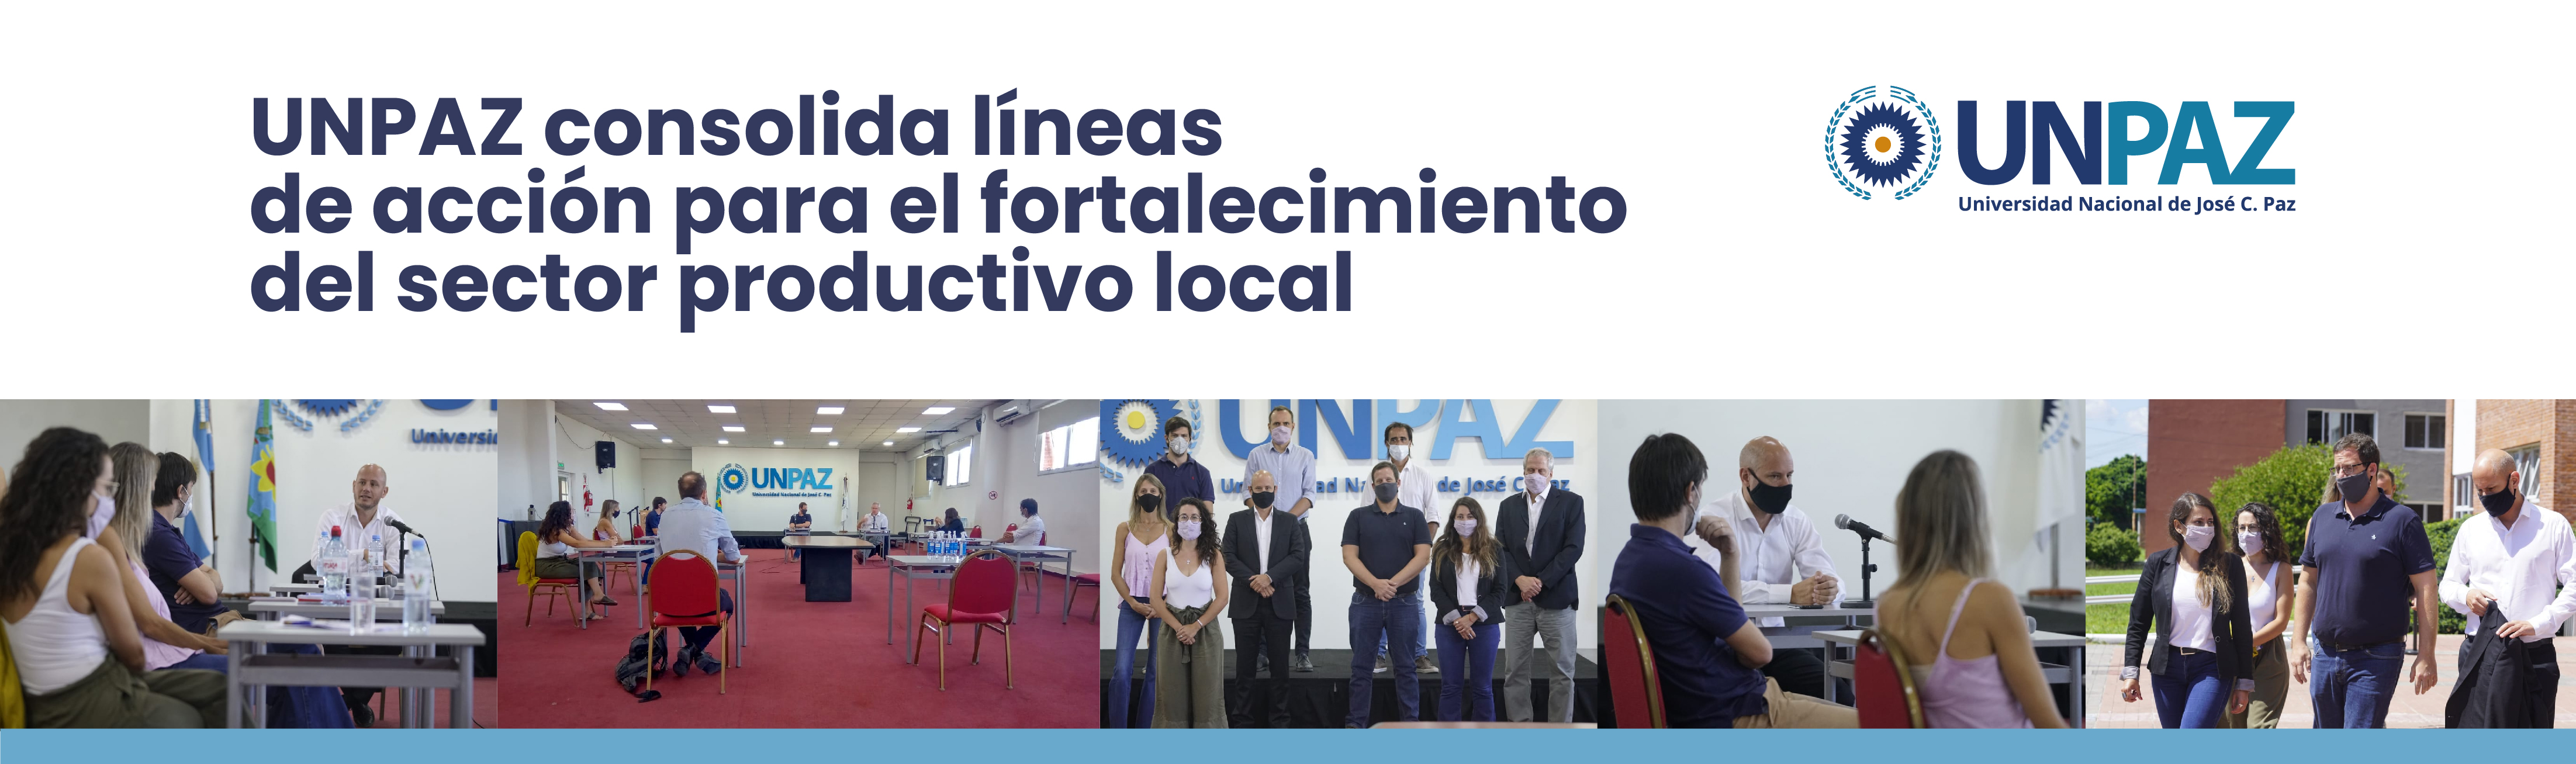 UNPAZ Consolida líneas de acción orientadas al fortalecimiento del sector productivo